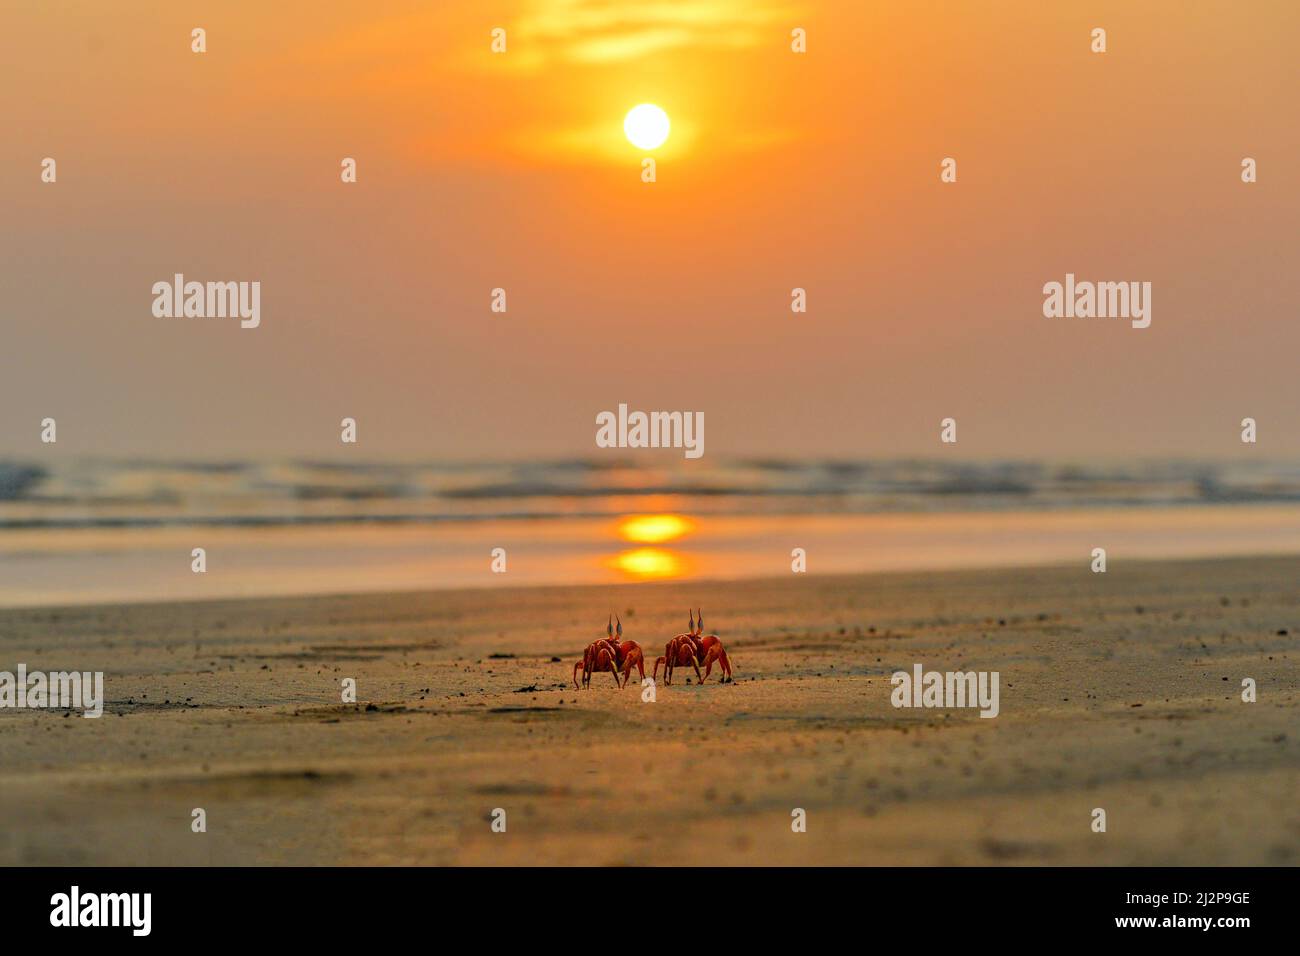 Bangladeshi Image Stock Photo